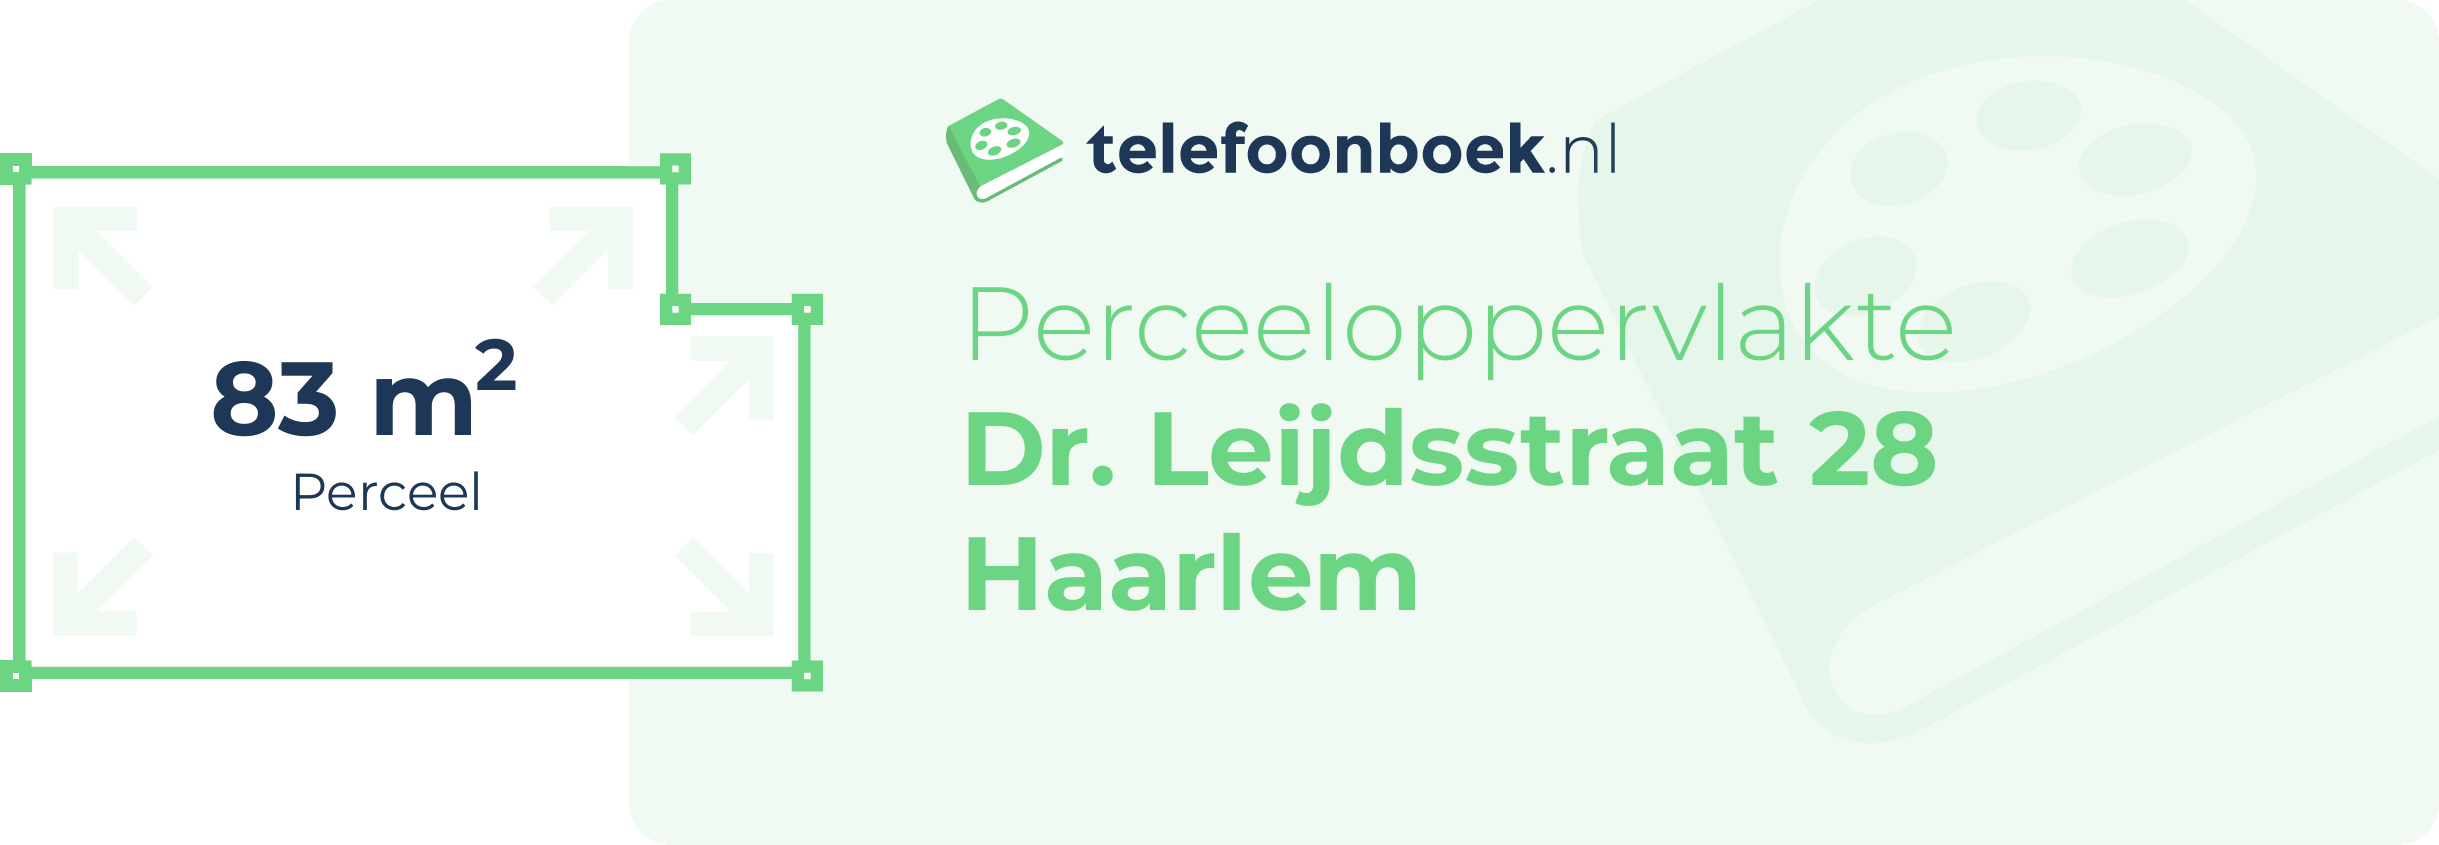 Perceeloppervlakte Dr. Leijdsstraat 28 Haarlem